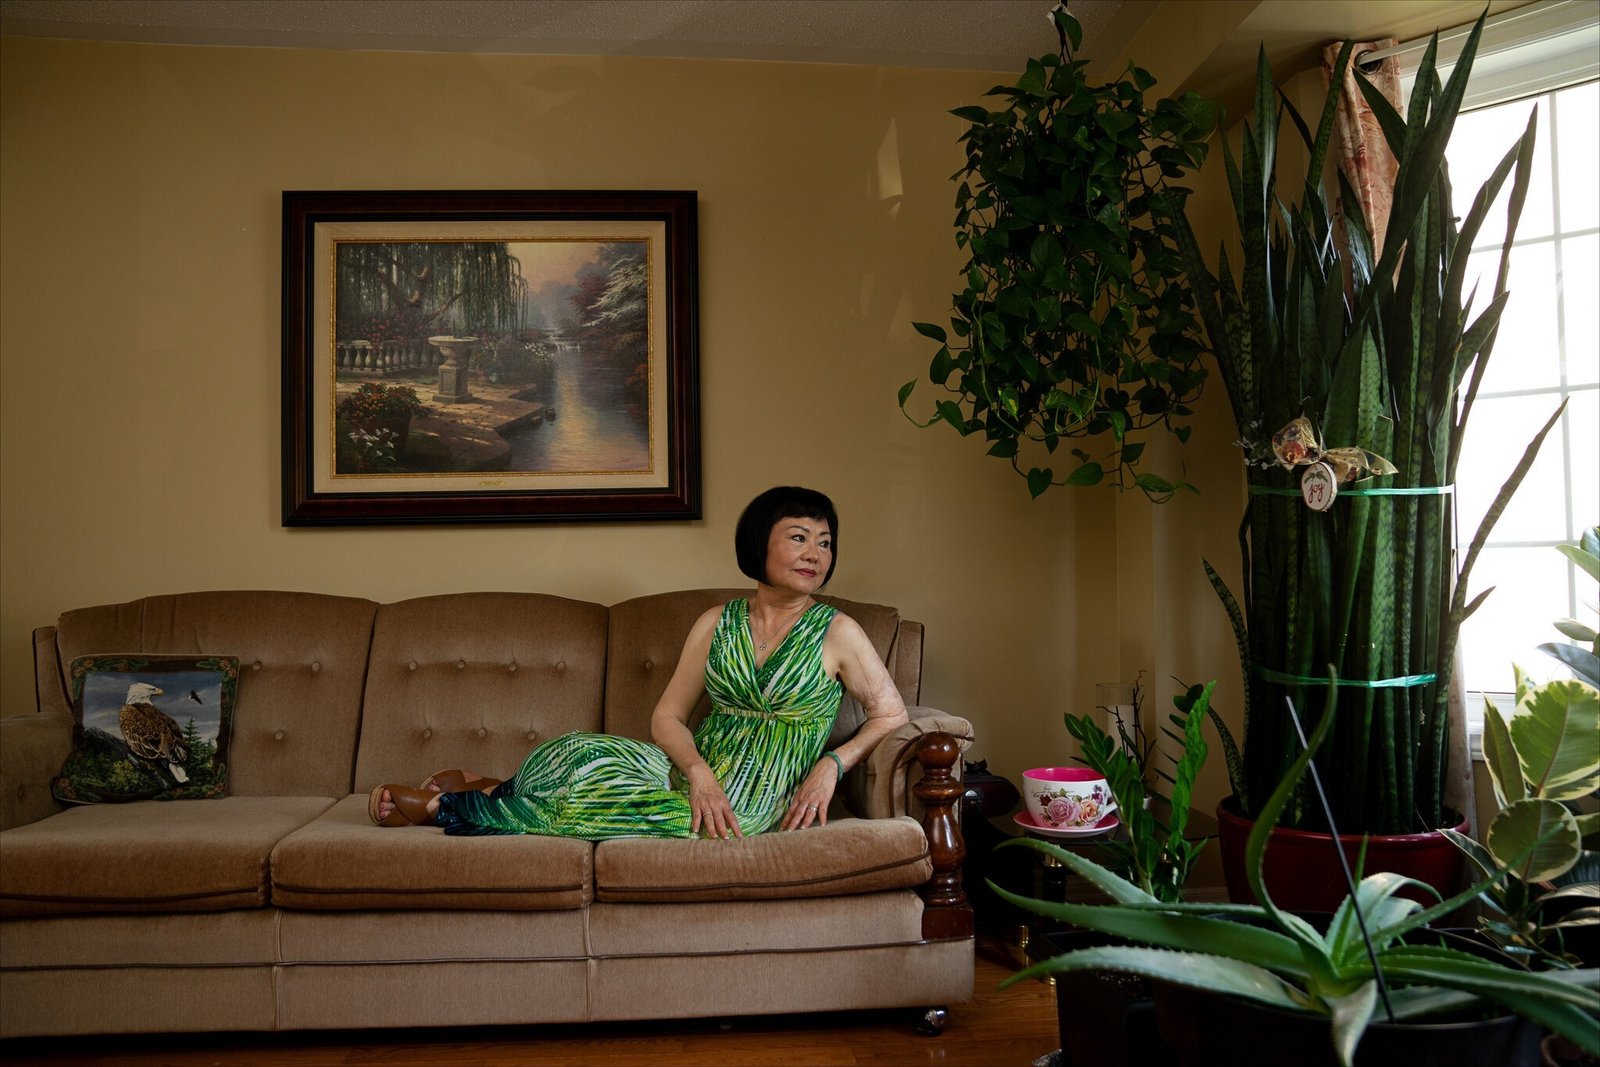 Tác giả bài viết, bà Kim Phuc, đang sống tại nhà riêng ở tỉnh Ontario, Canada. Tác quyền: May Truong cho The New York Times.